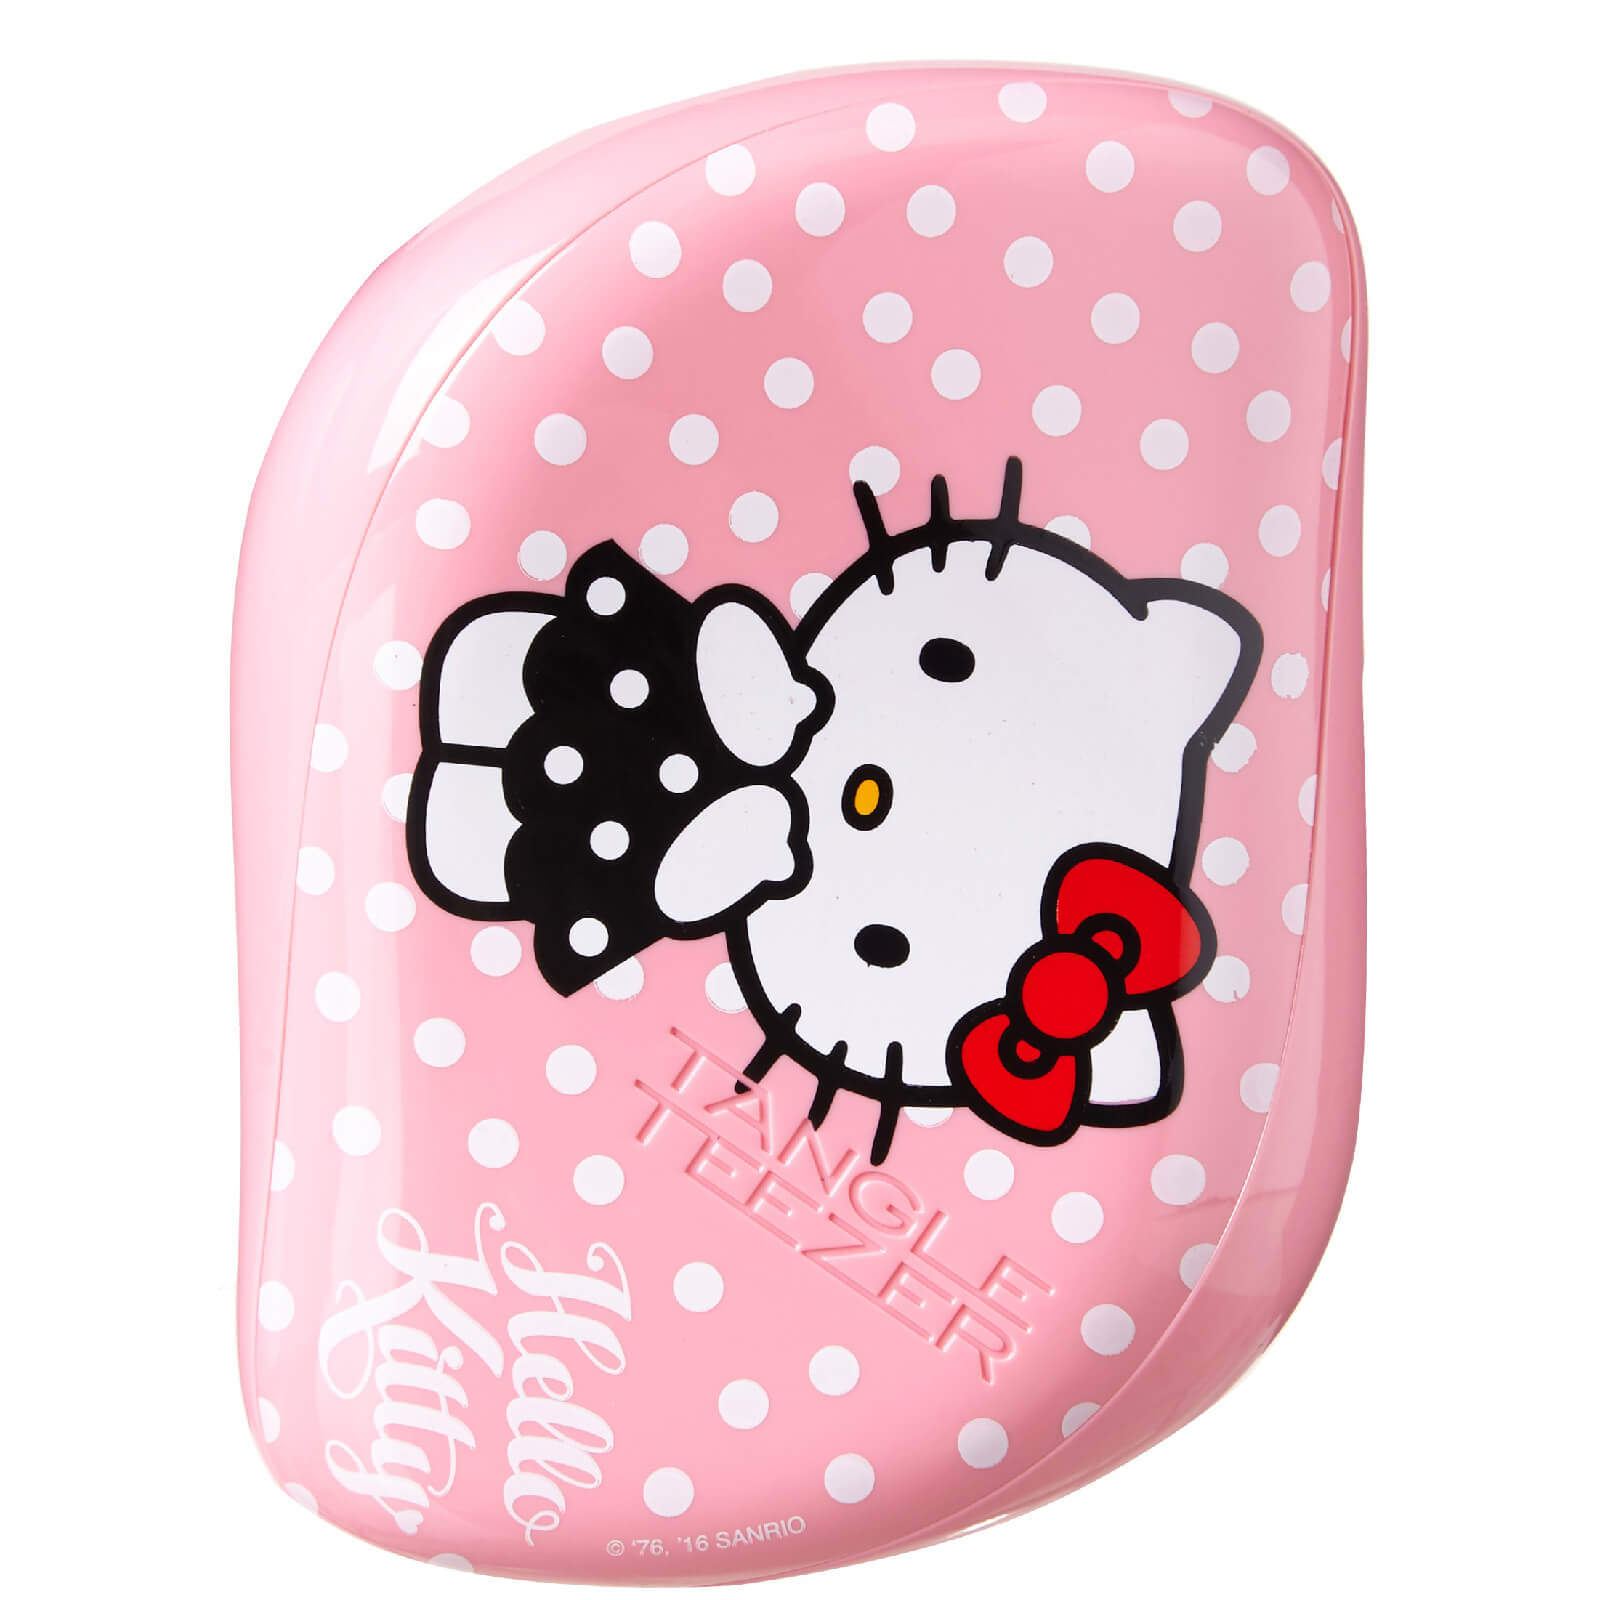 Cepillo de Pelo Compact Styler Hello Kitty de Tangle Teezer - Rosa